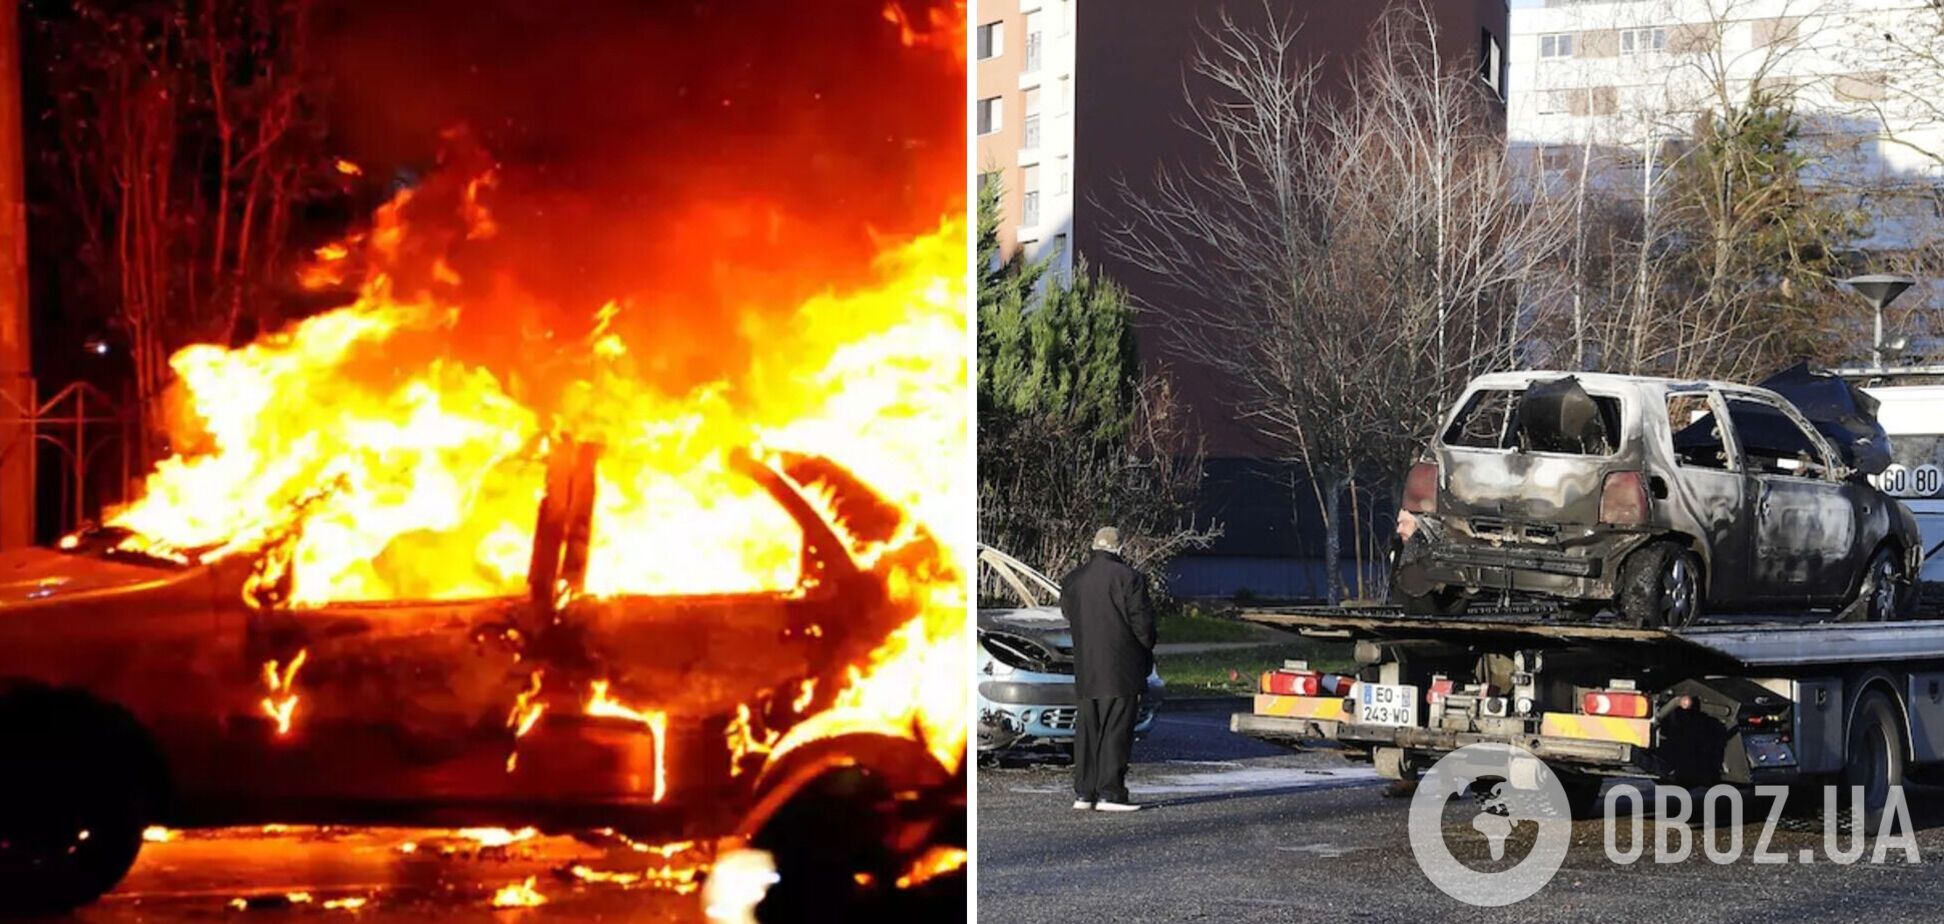 Во Франции в новогоднюю ночь сожгли почти 900 авто, задержаны сотни людей. Фото и видео